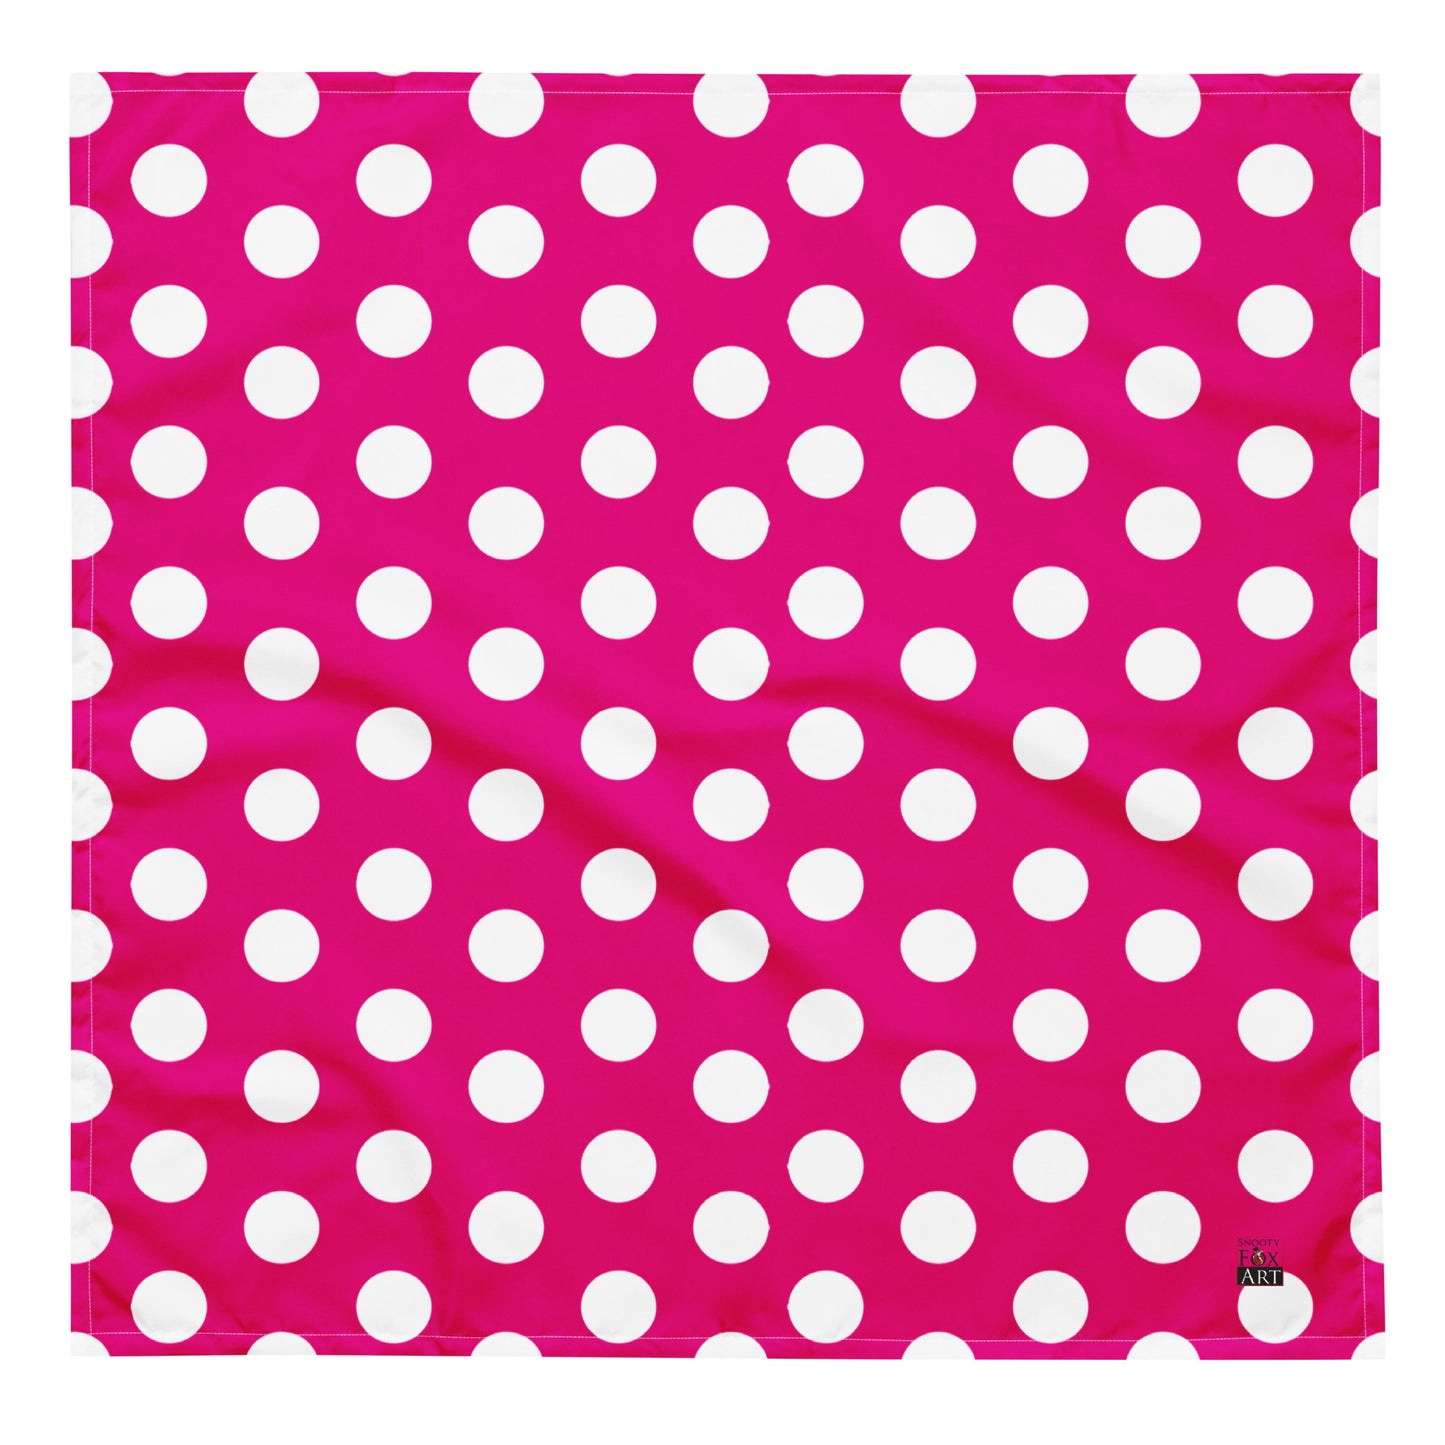 Snooty Fox Art Bandana - Mexico Pink & White Polka Dots